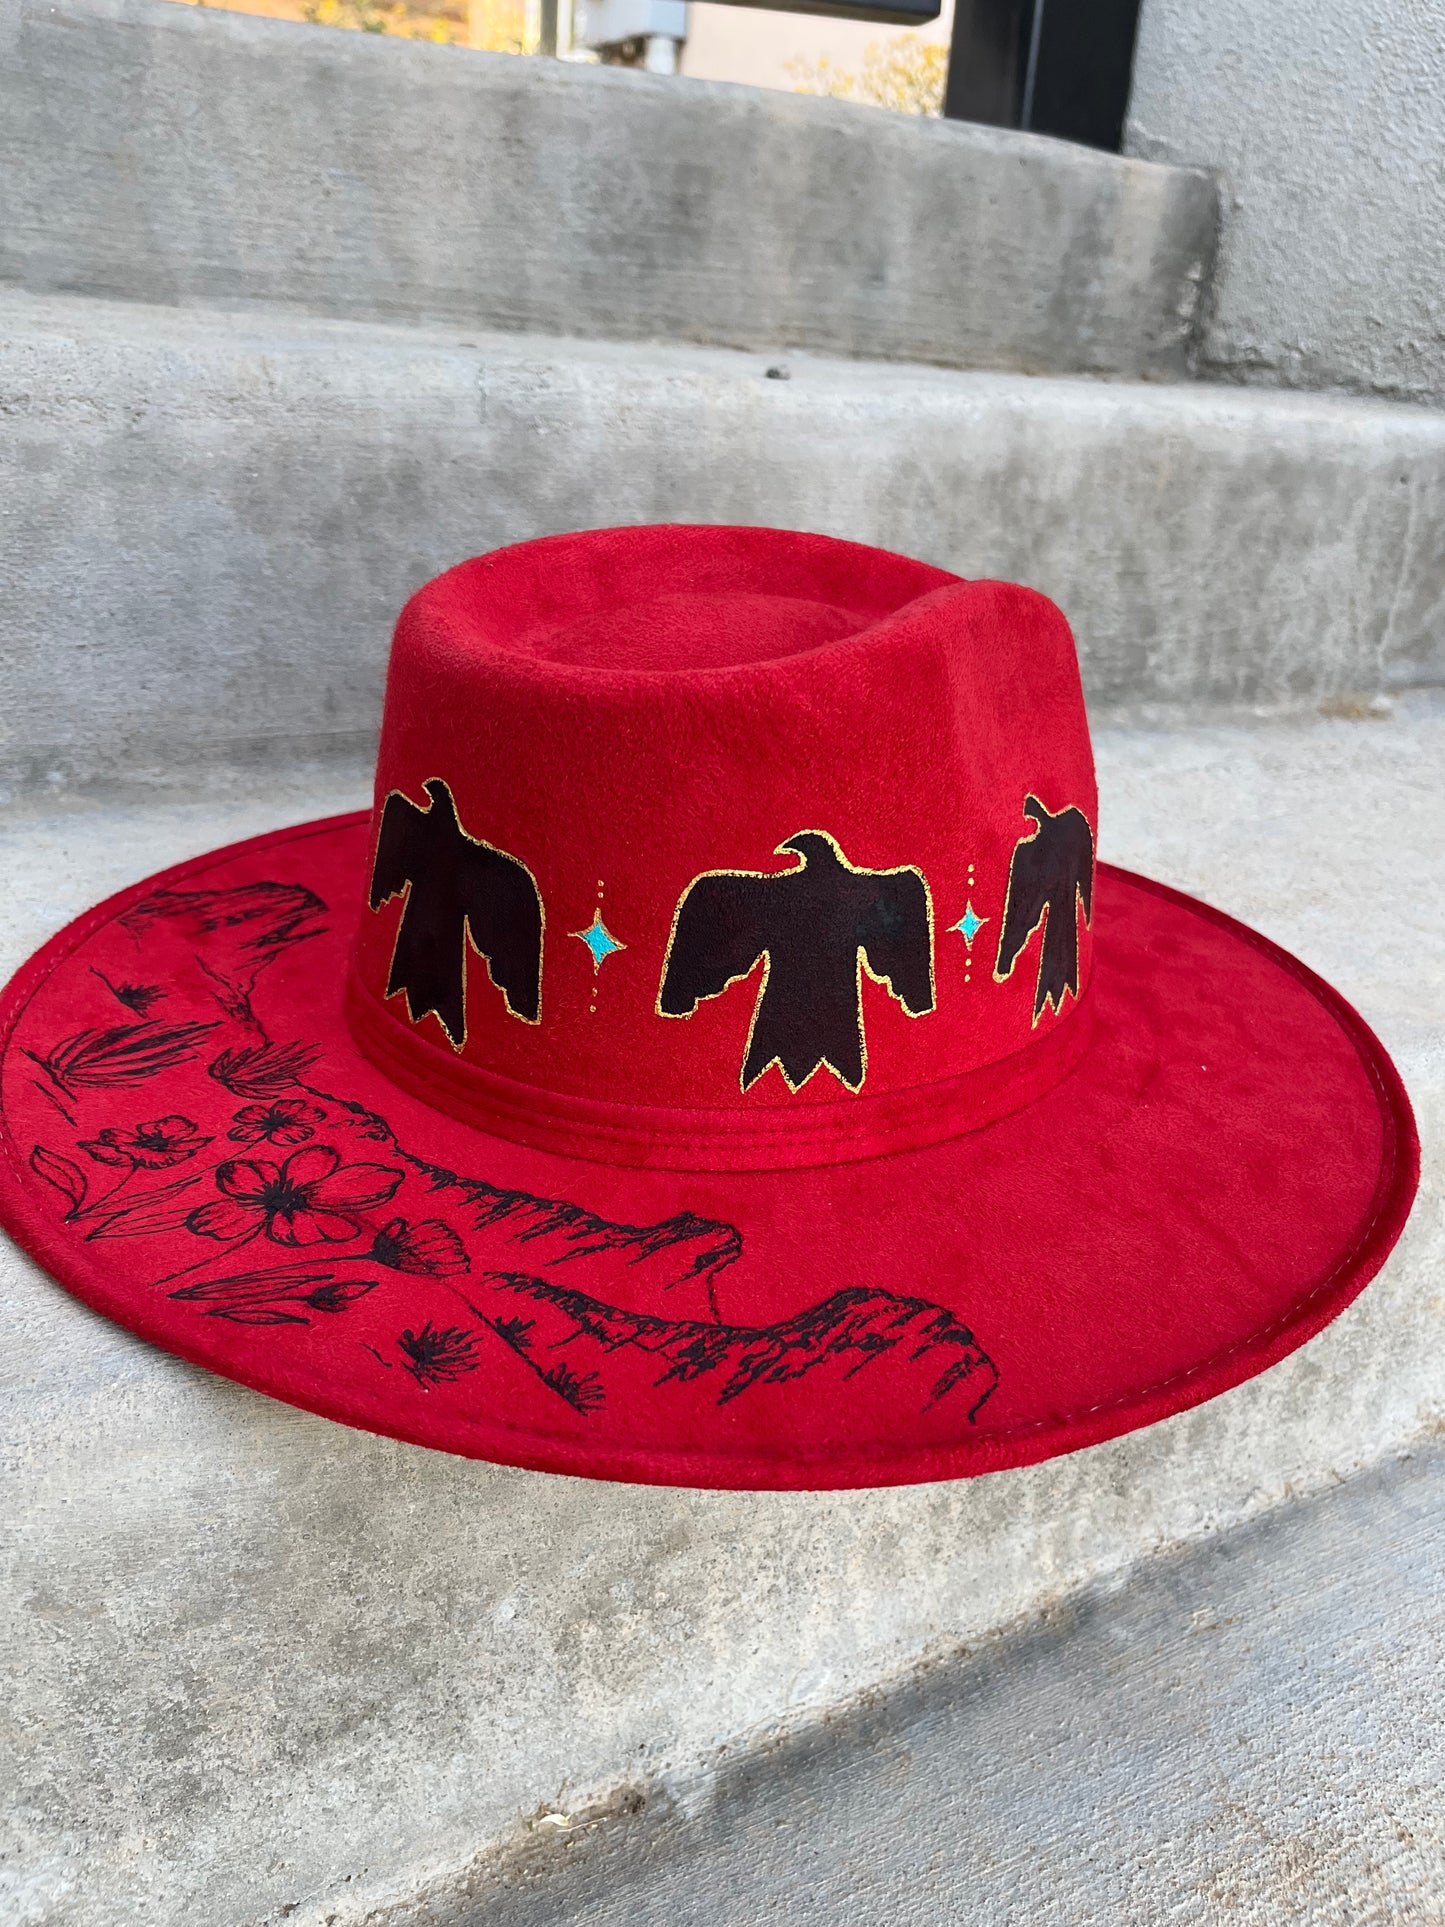 Desert thunderbird red suede wide brim rancher hat